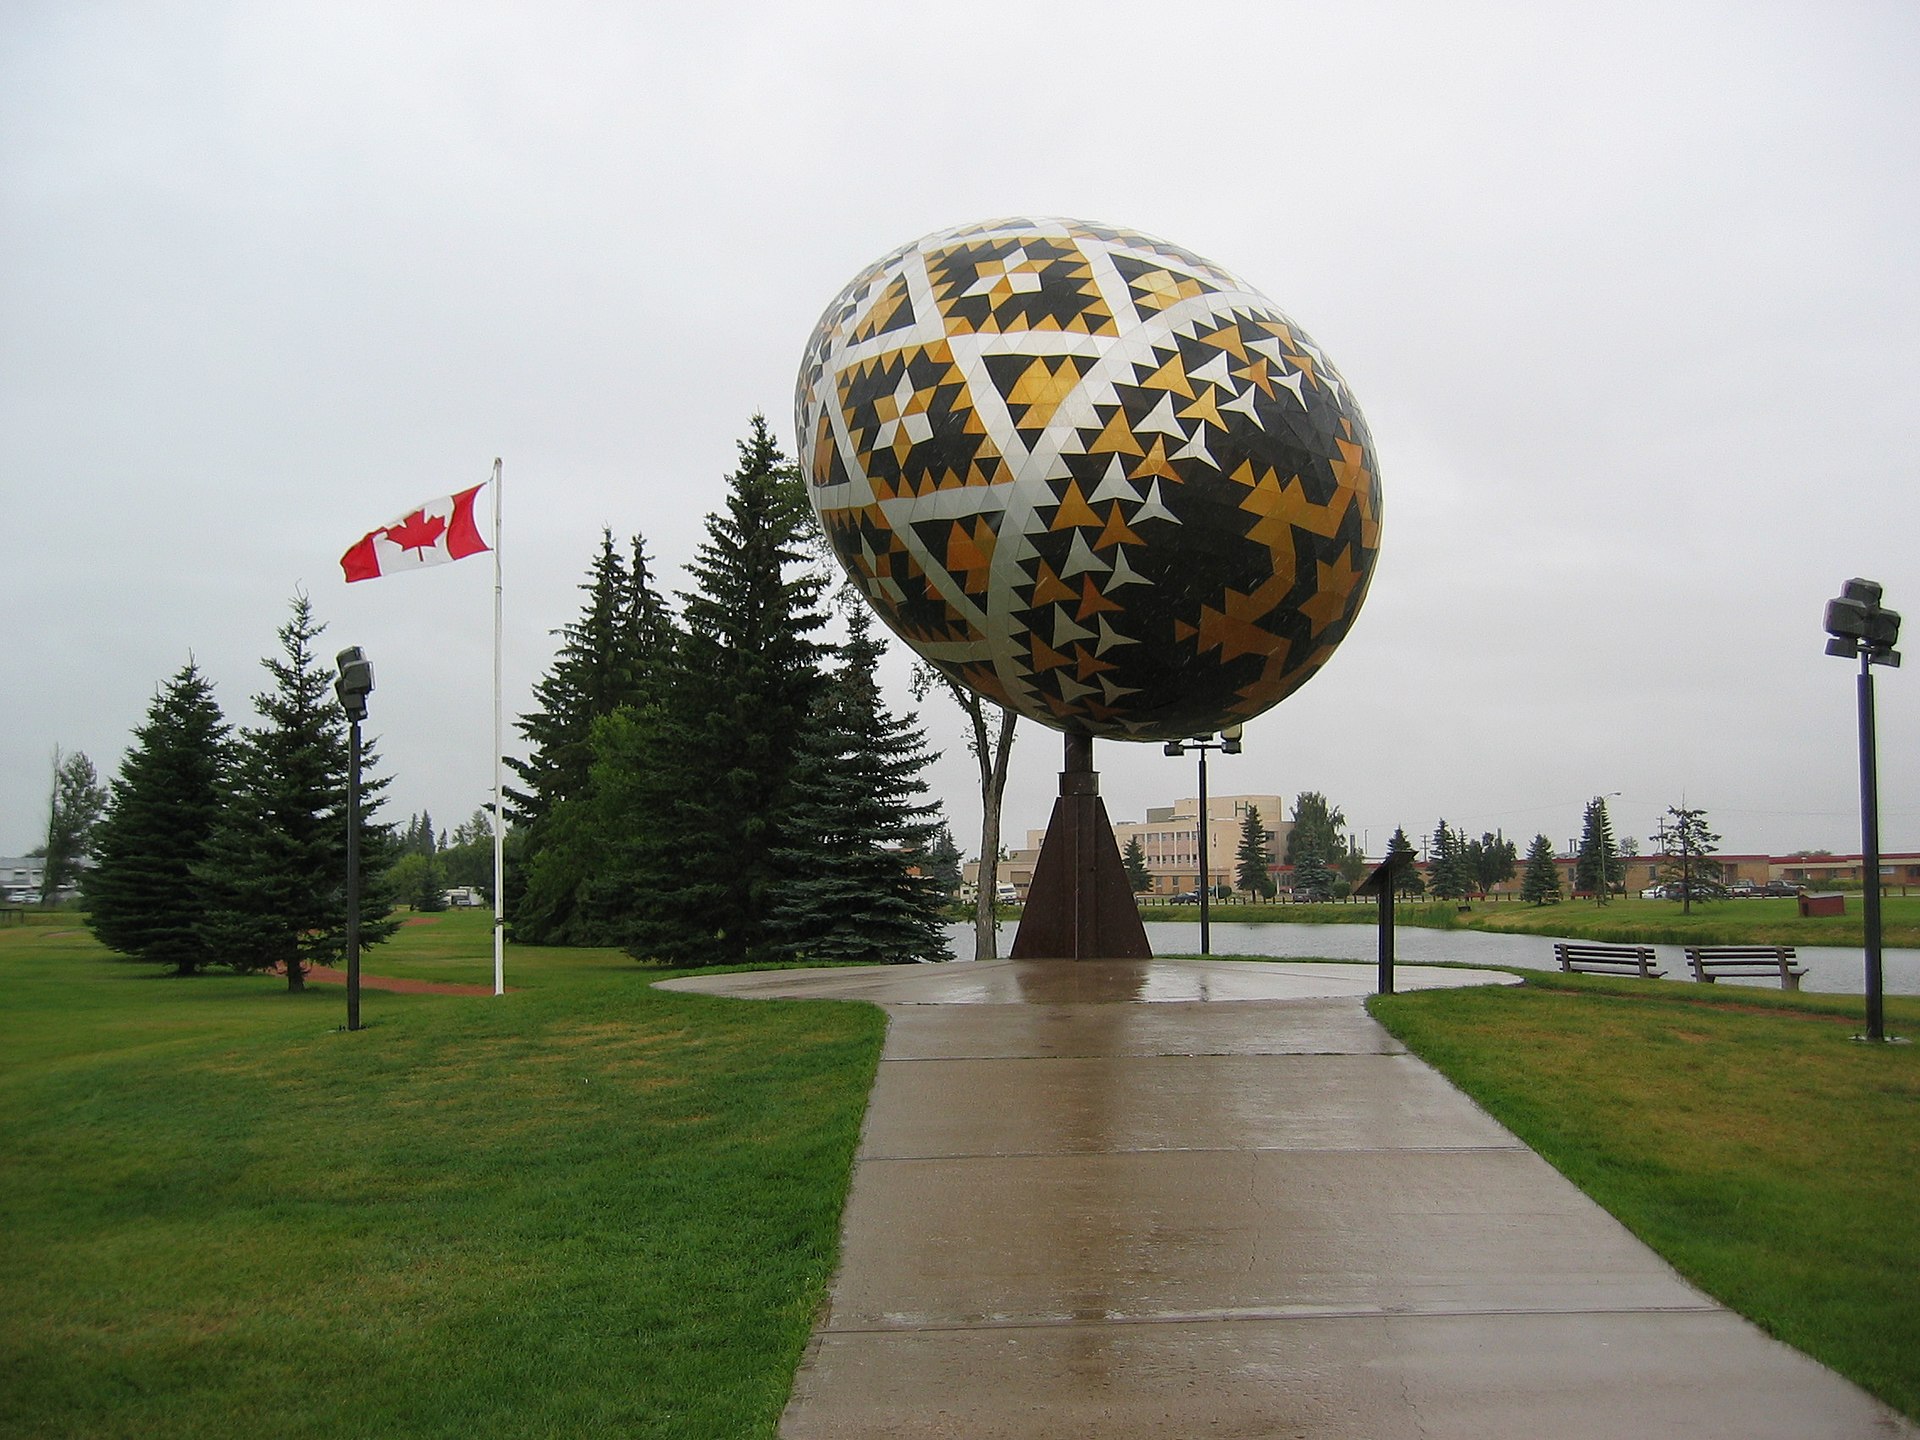 «Вегревильская писанка» — скульптура в виде пасхального яйца, расписанного в украинском стиле. Вегревилль, провинция Альберт. Канада